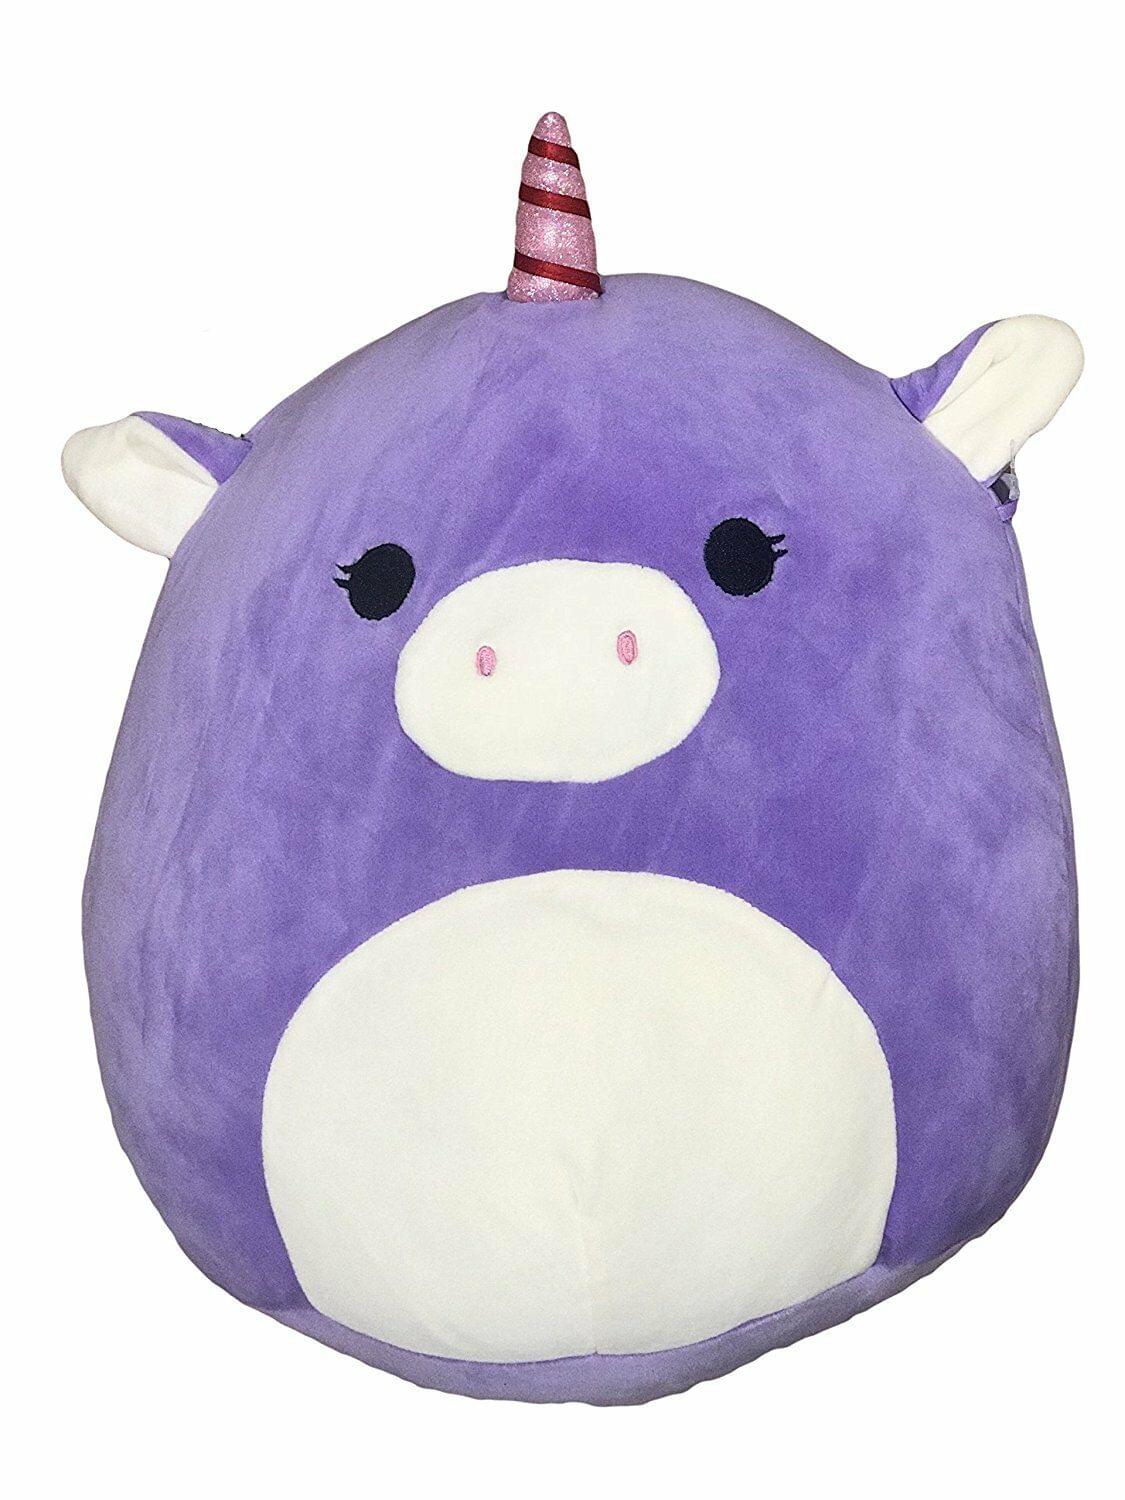 Squishmallow Purple Unicorn Plush Toy | 24 Inches